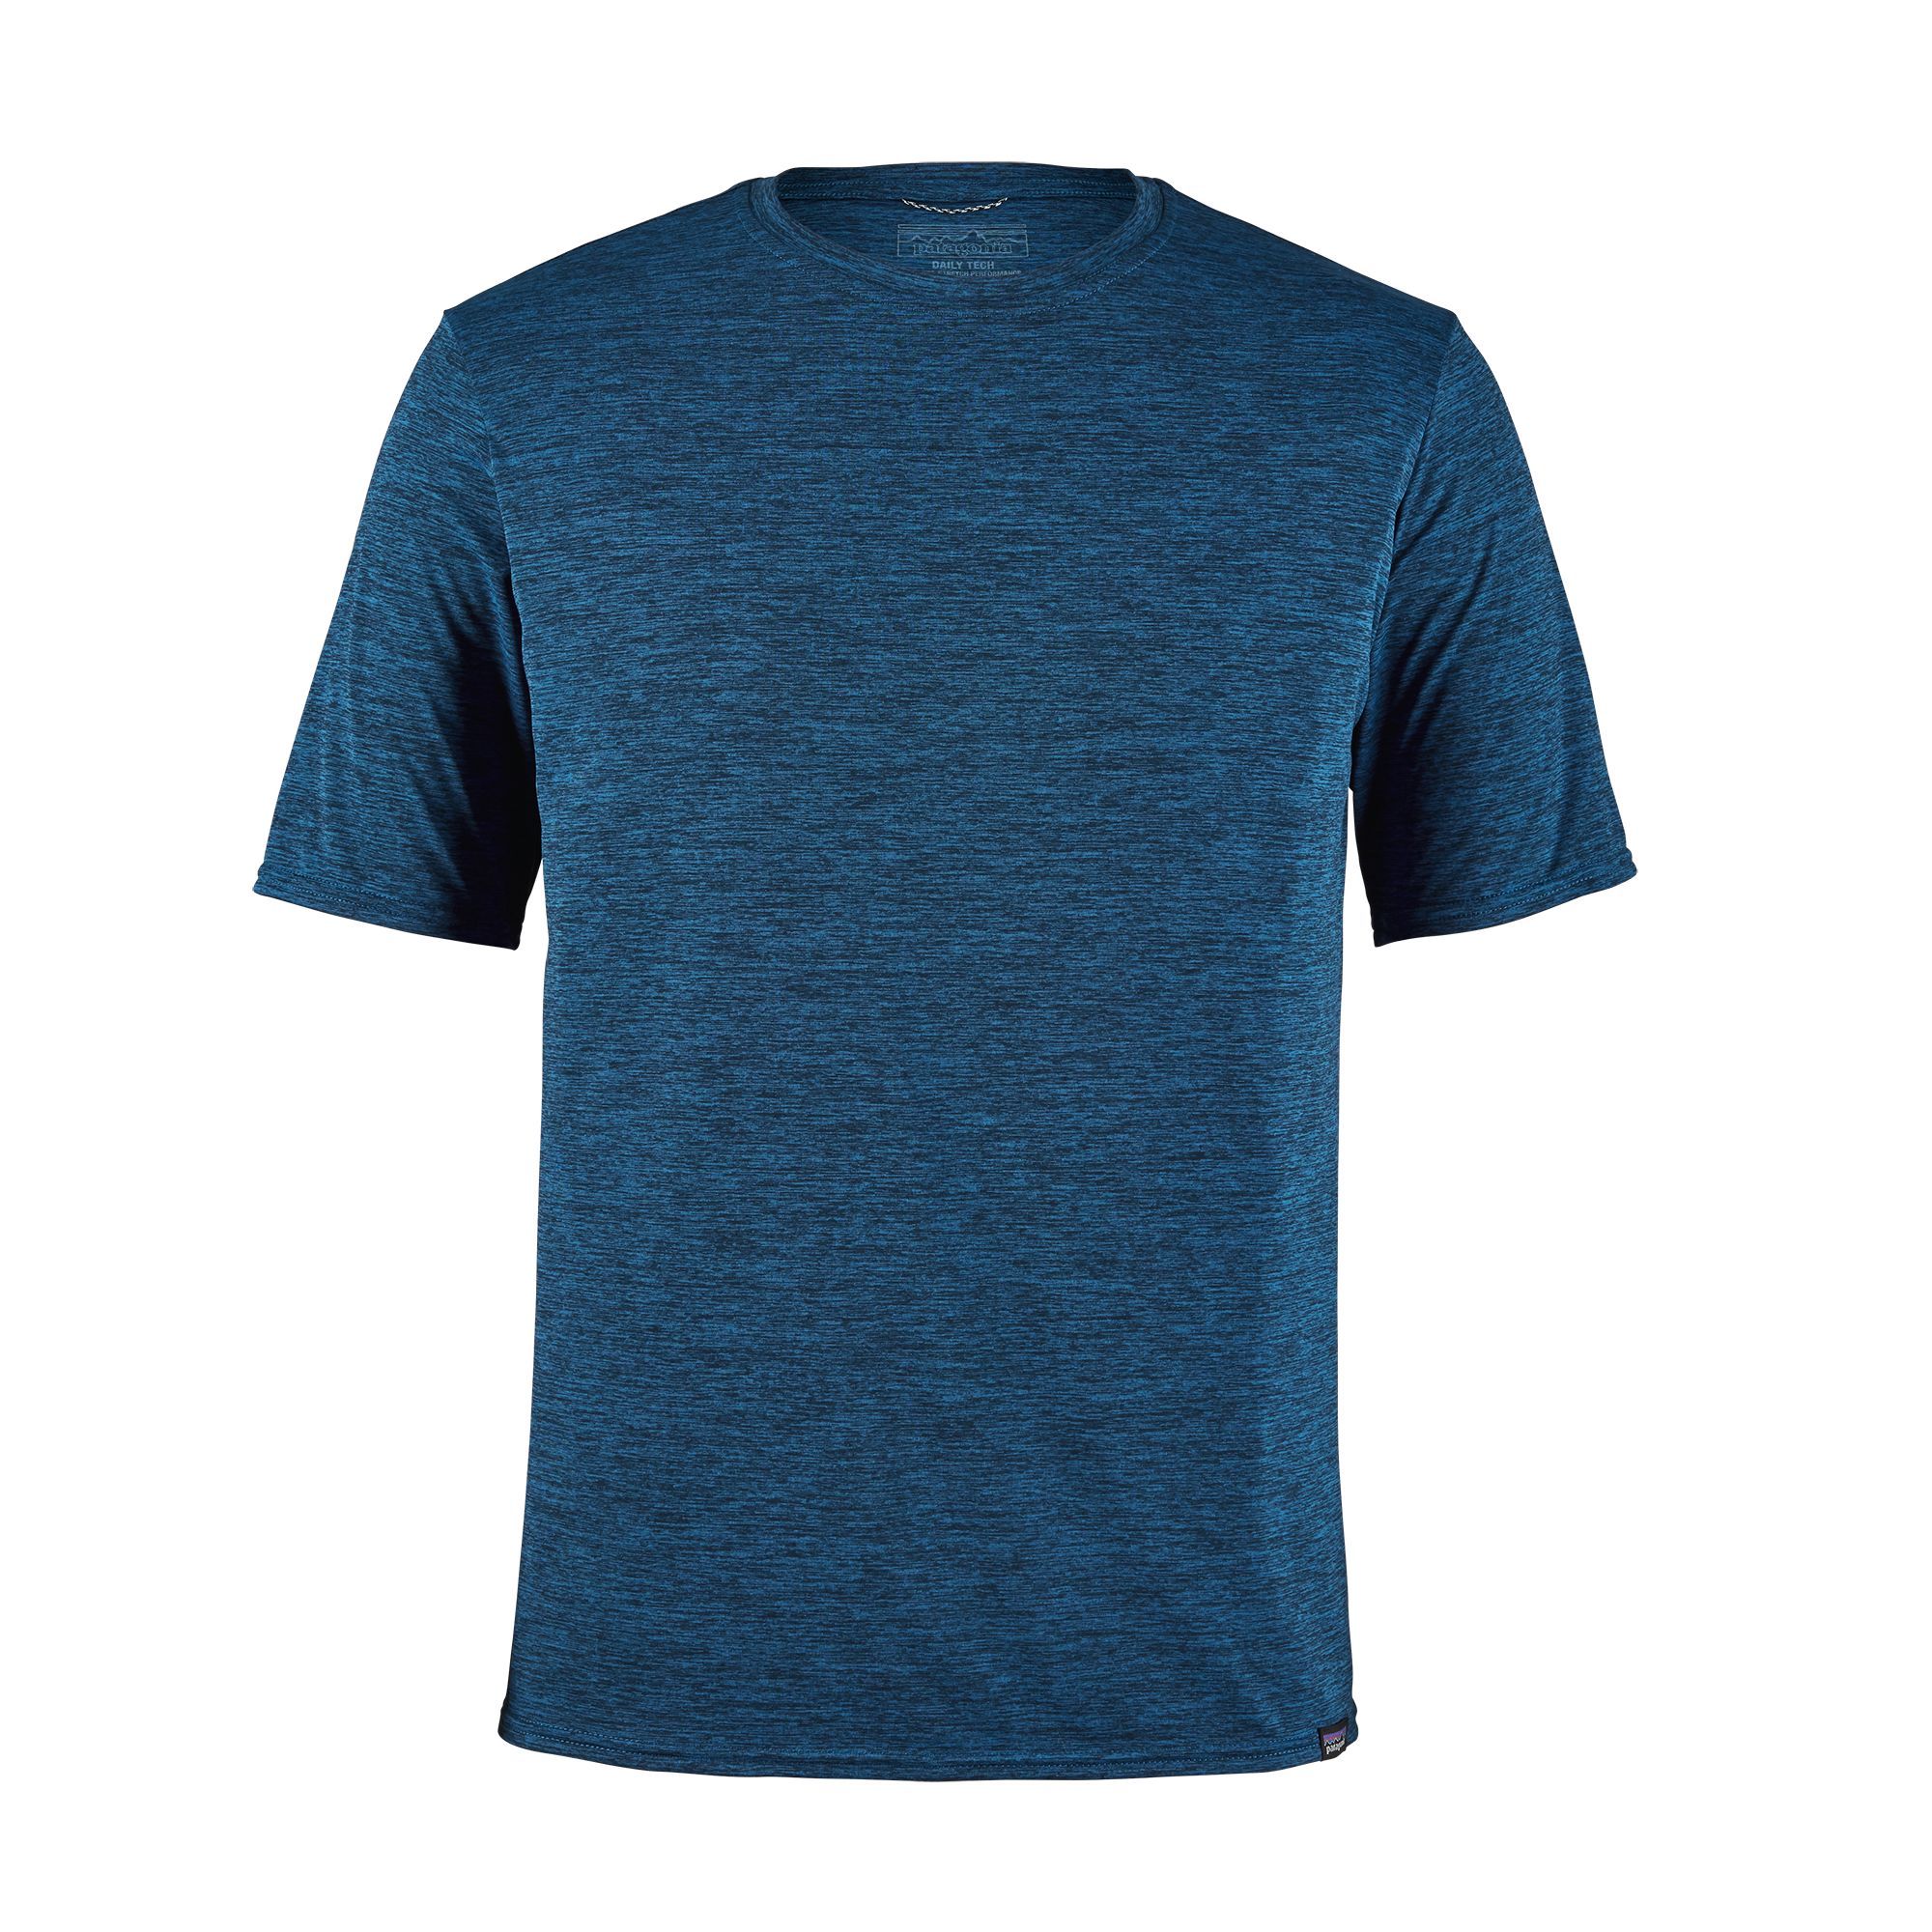 T-shirt Men's Capilene Cool Daily Shirt